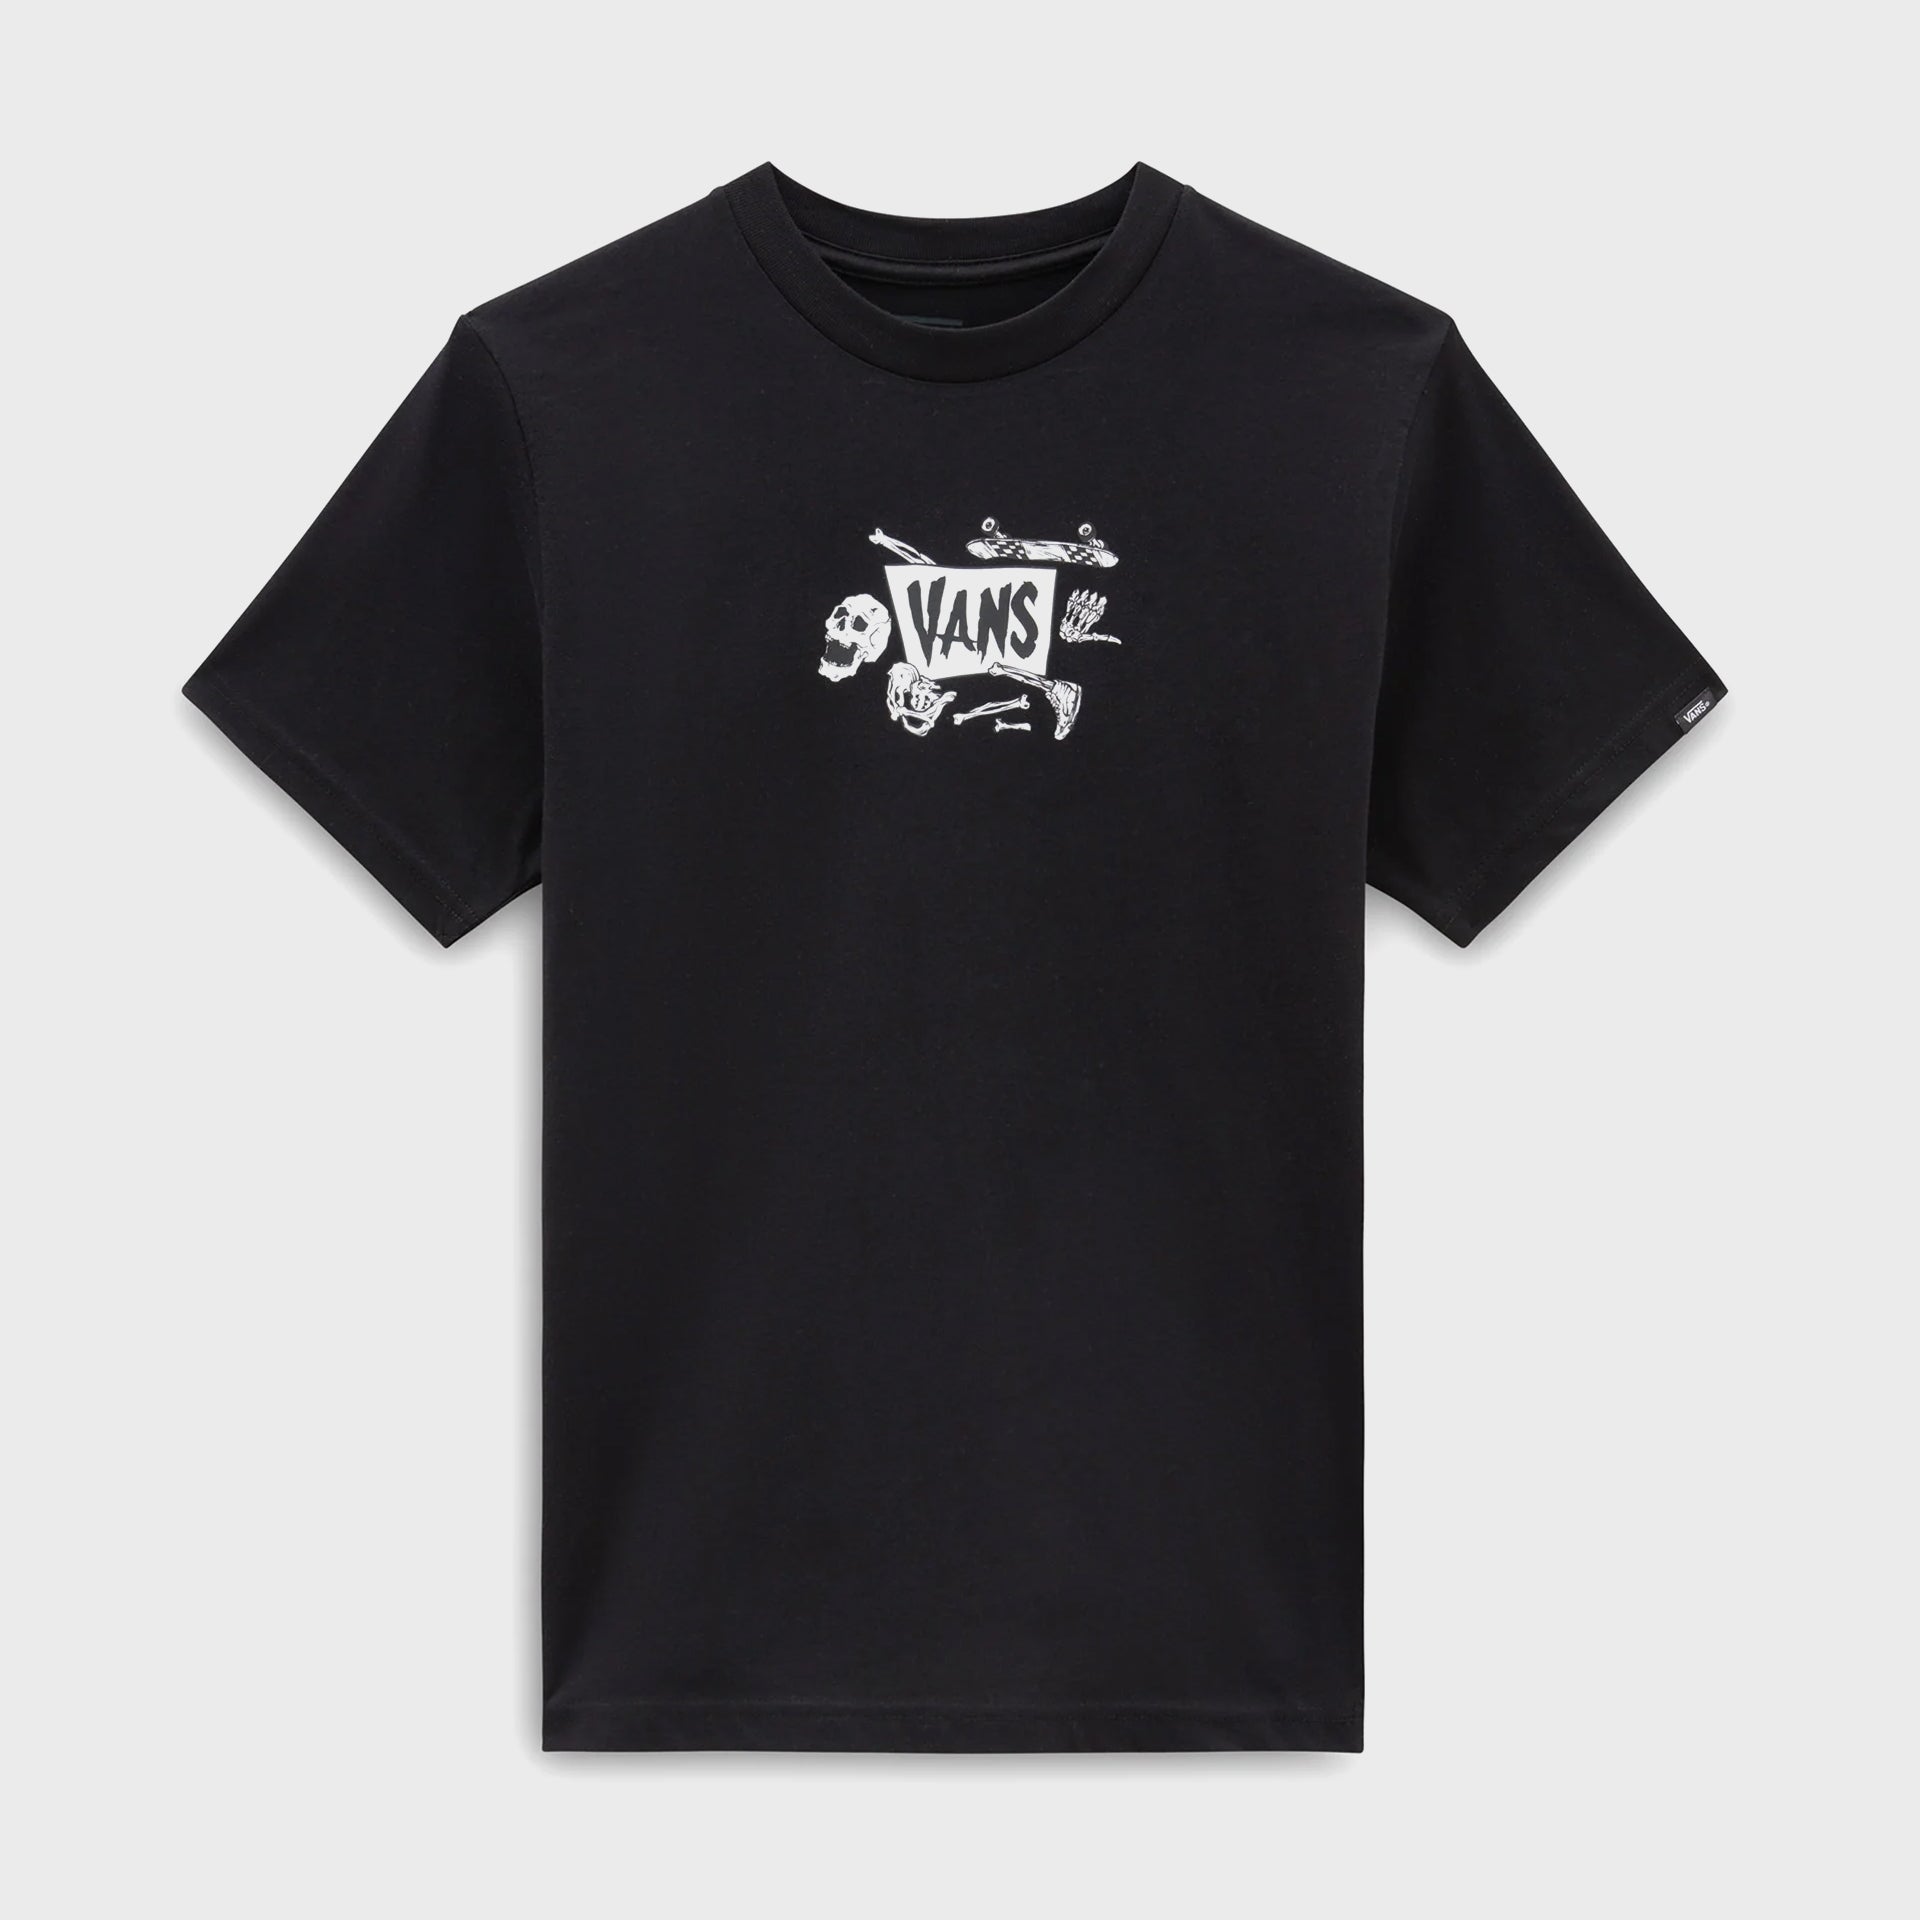 Vans Kids Skeleton T-Shirt (8-14 Years) - Black - ManGo Surfing